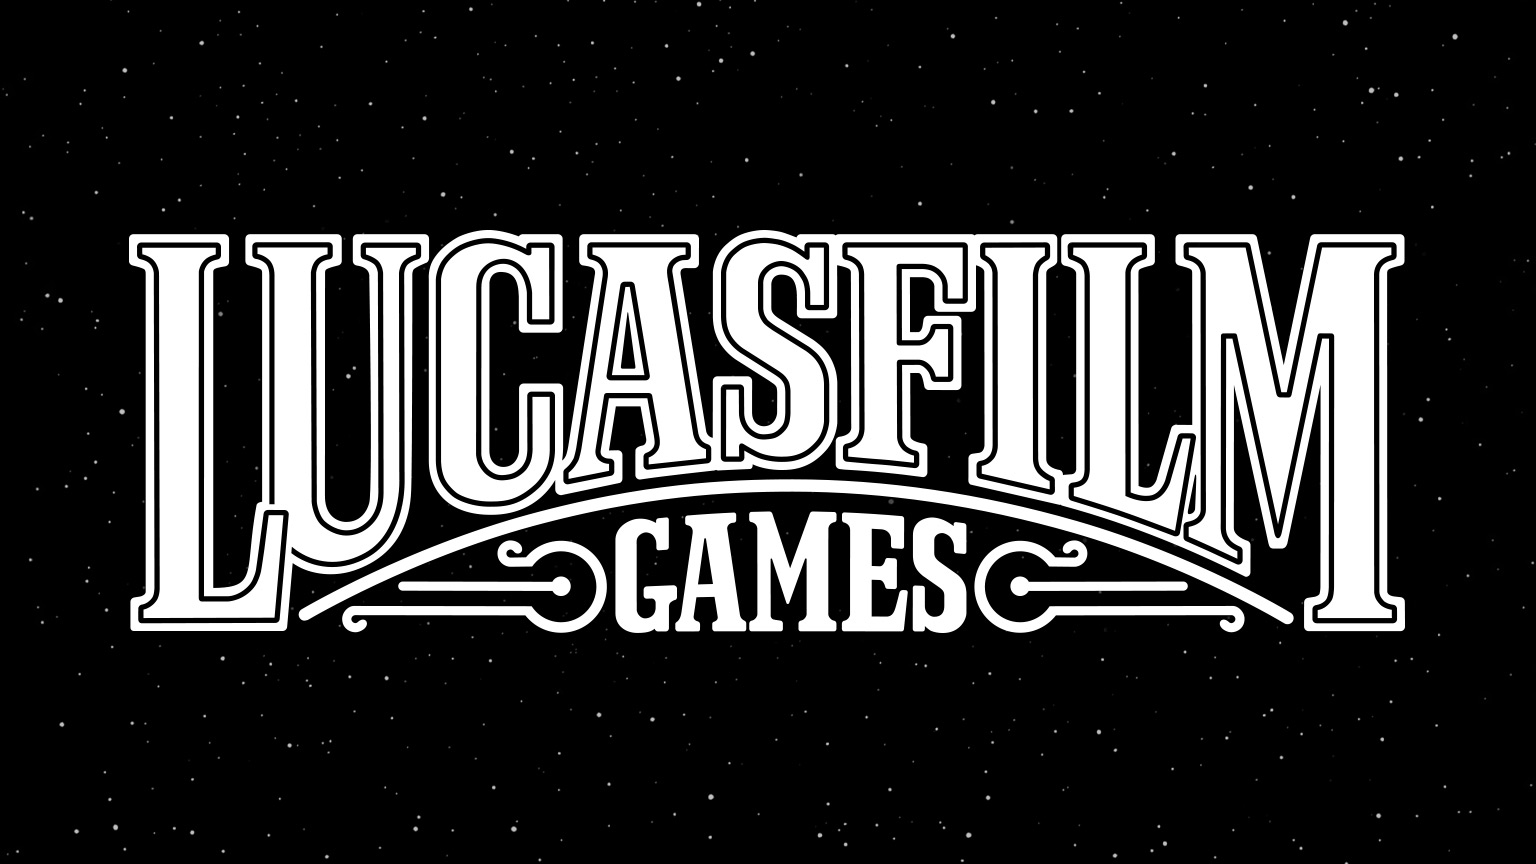 Rise, LucasFilm Games!